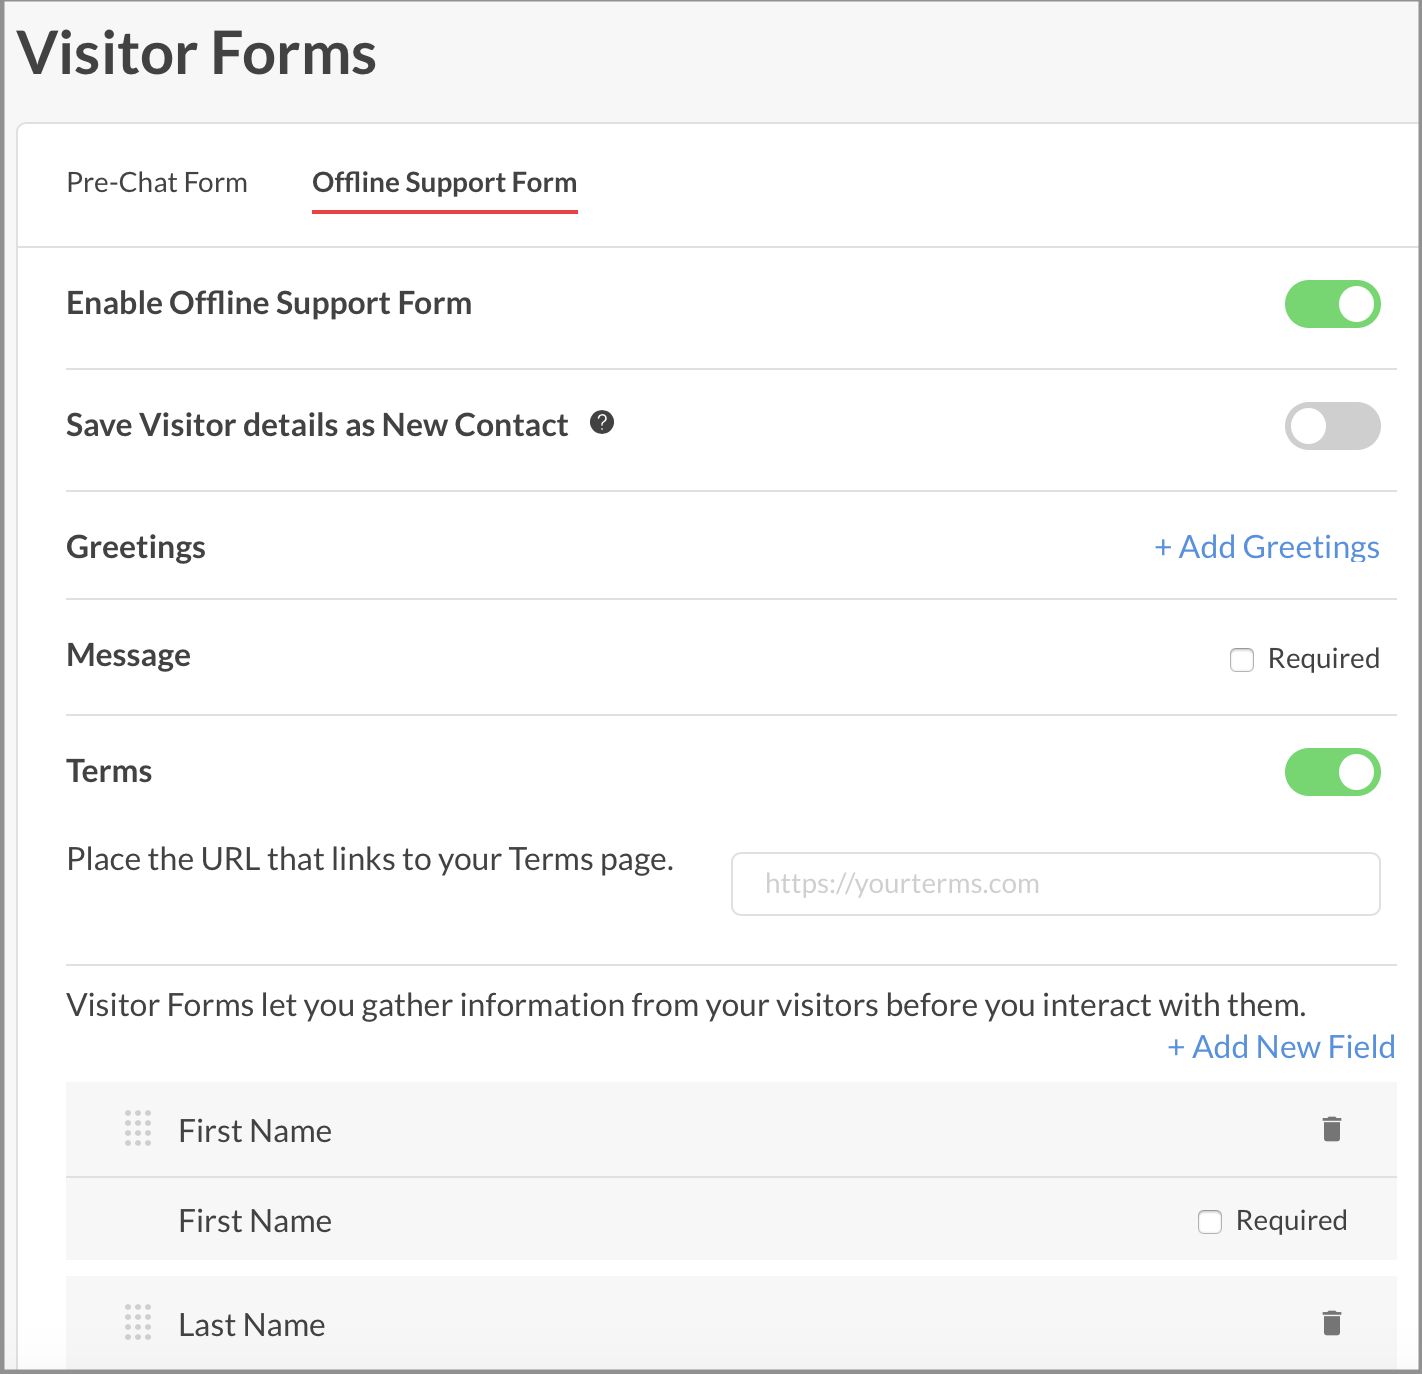 Configure Offline Support Form